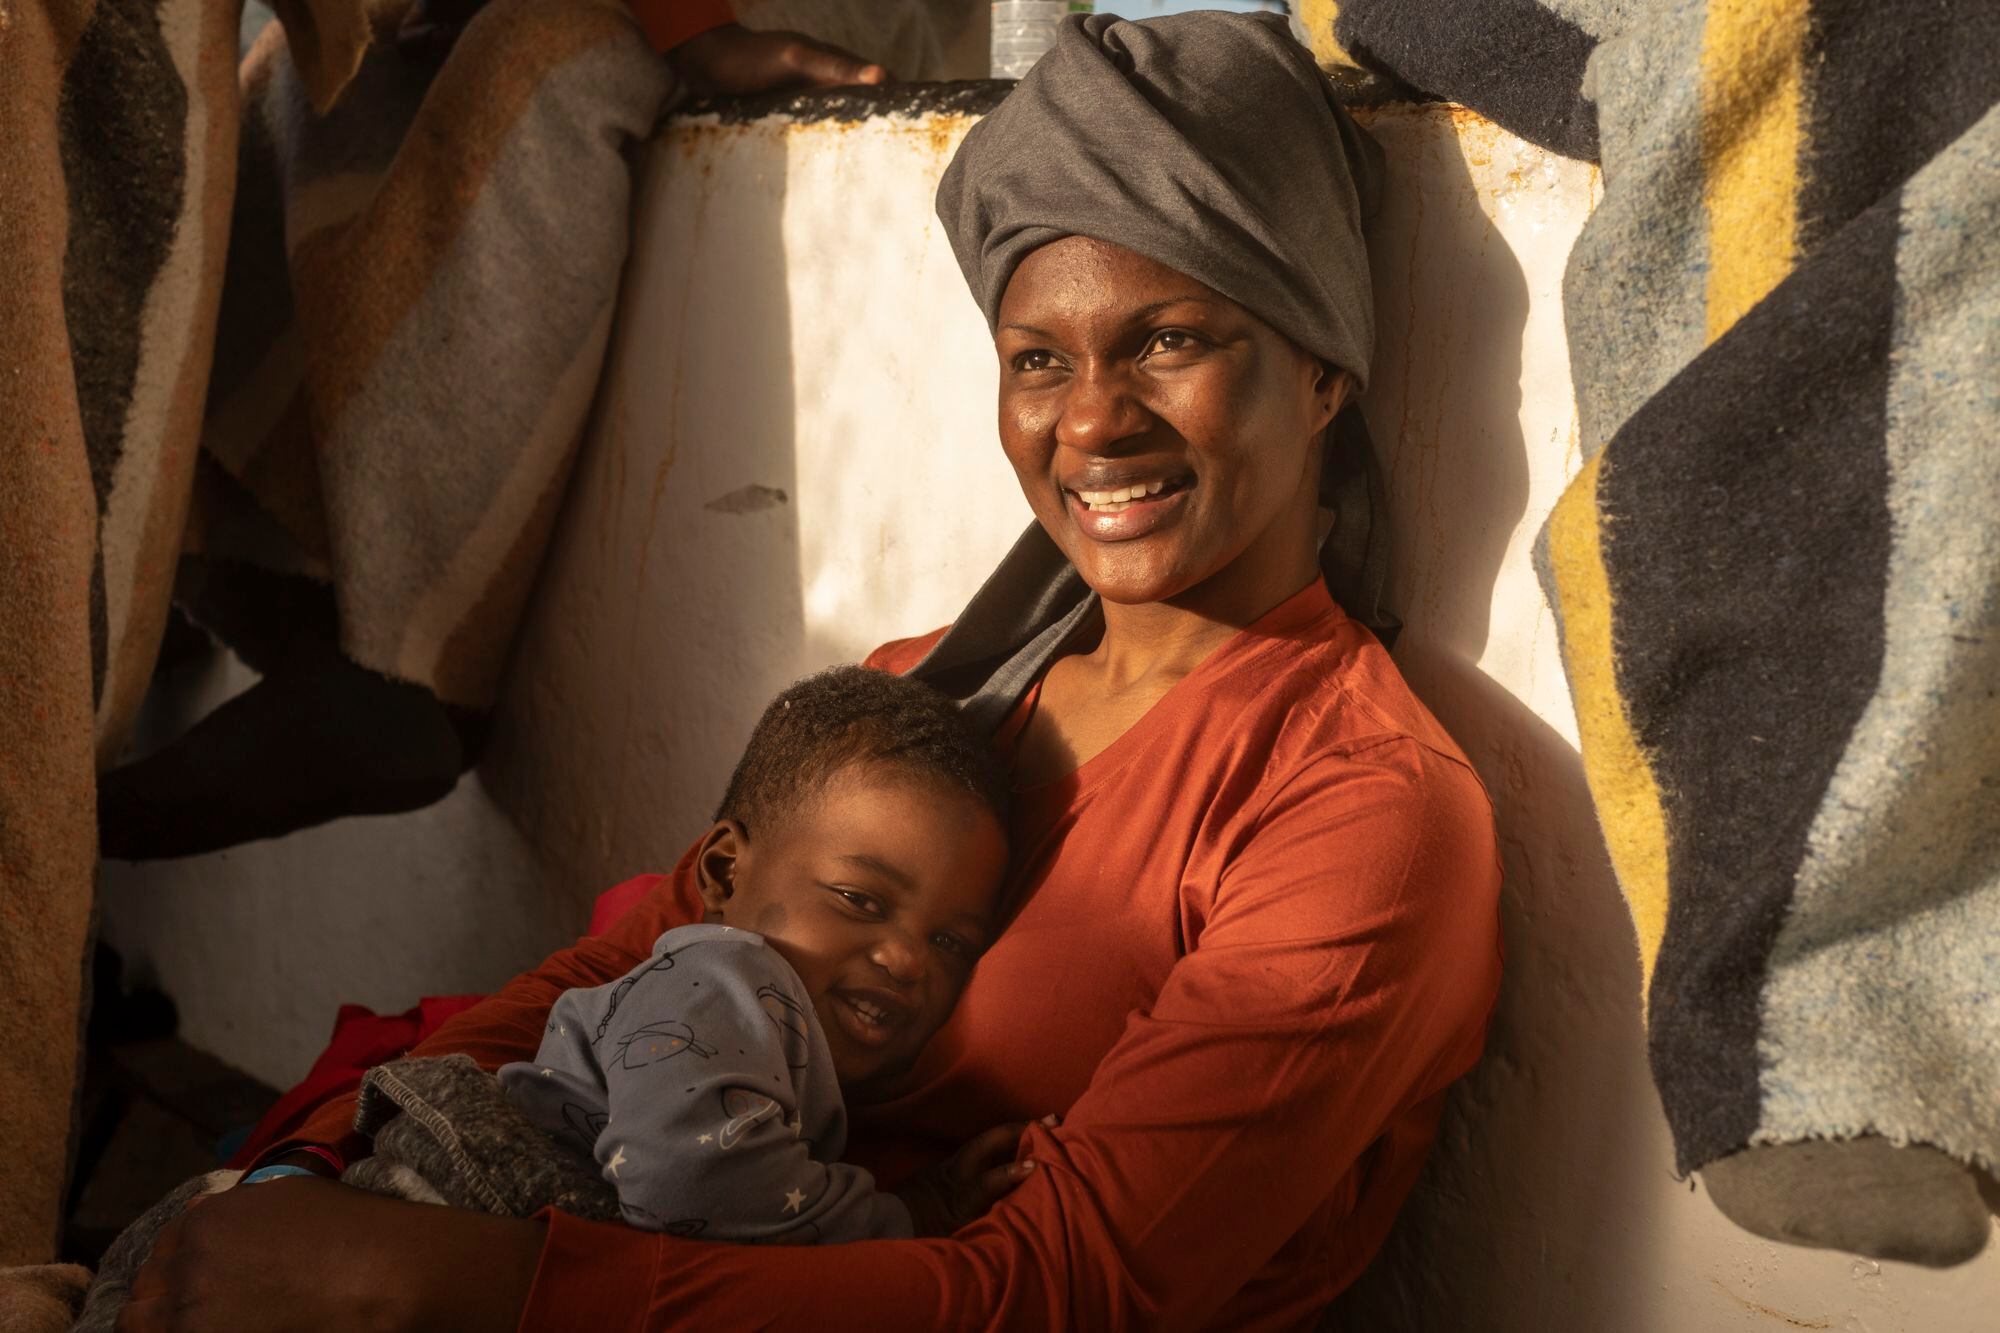 Hadiya, la madre de Amala, descansa en la cubierta junto a su bebé. Logró escapar de Libia después de tres años. Allí había llegado siendo aún menor, huyendo de los malos tratos de su padre. Fue víctima de mutilación genital femenina a los dos años.